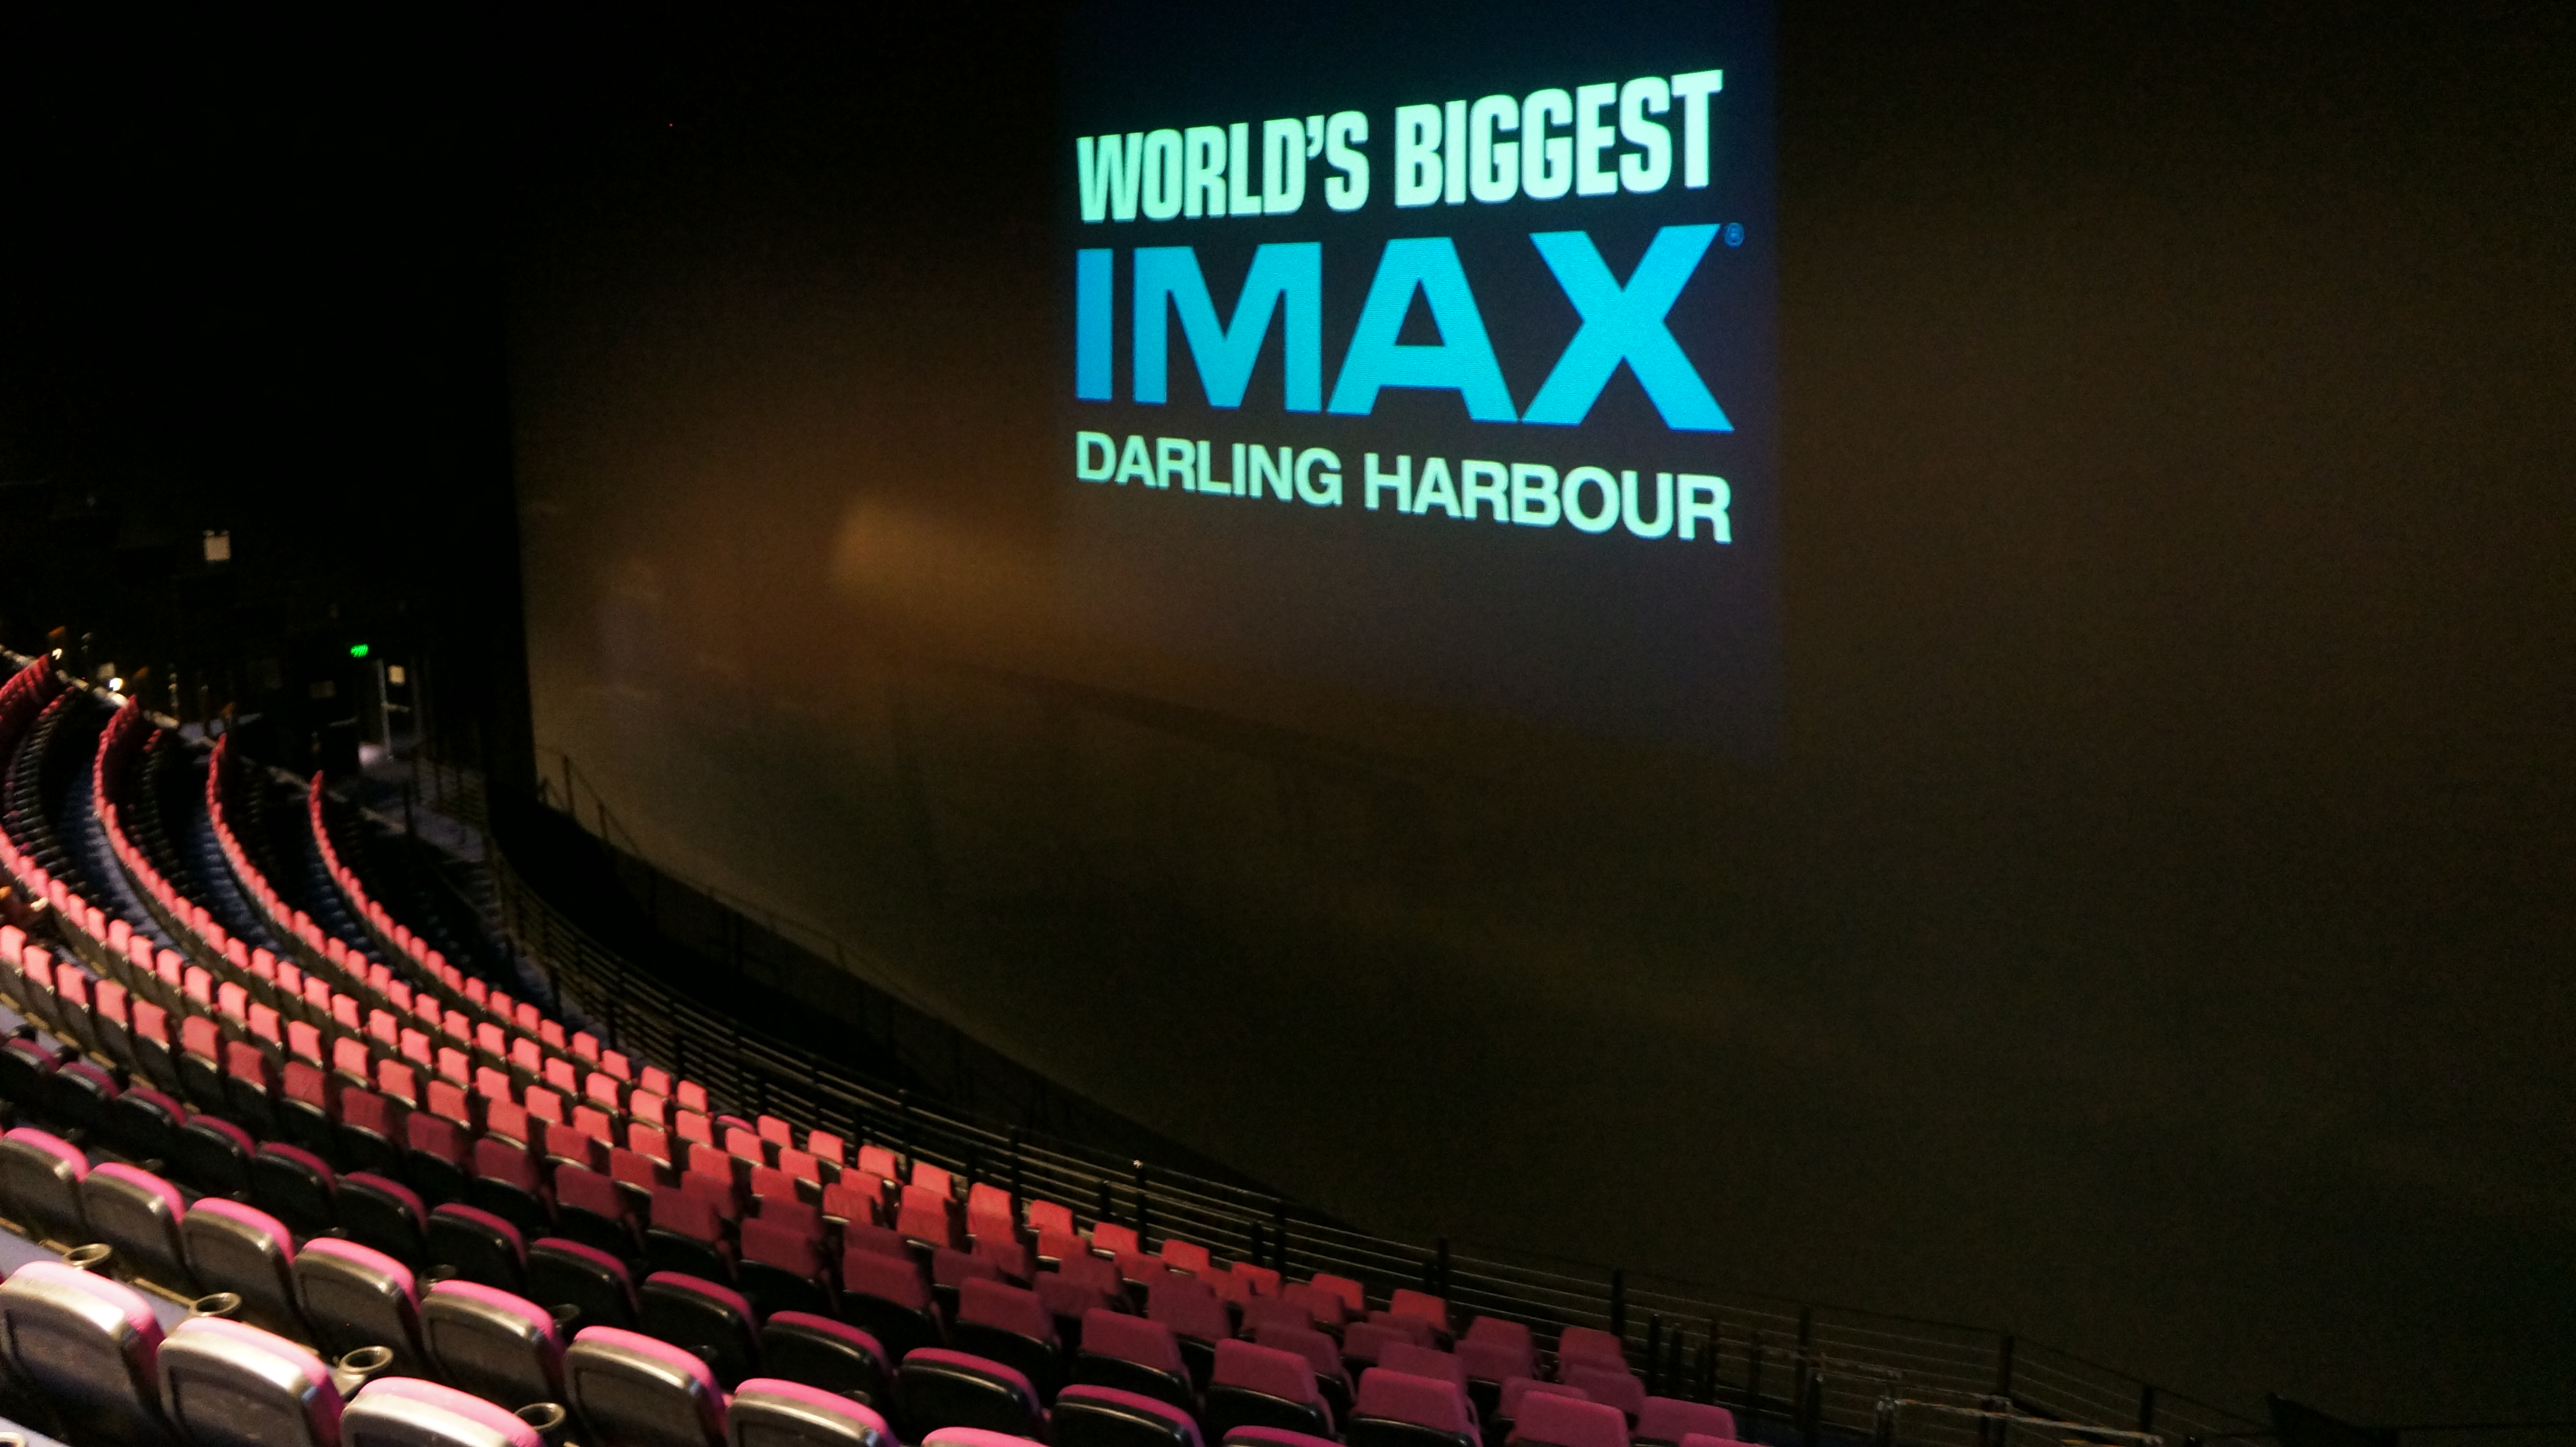 Лучший кинотеатр в россии. Панасоник аймакс Сидней. Аймакс кинотеатр в Москве самый большой экран. Panasonic IMAX Австралия Сидней. Самый большой экран аймакс в мире.